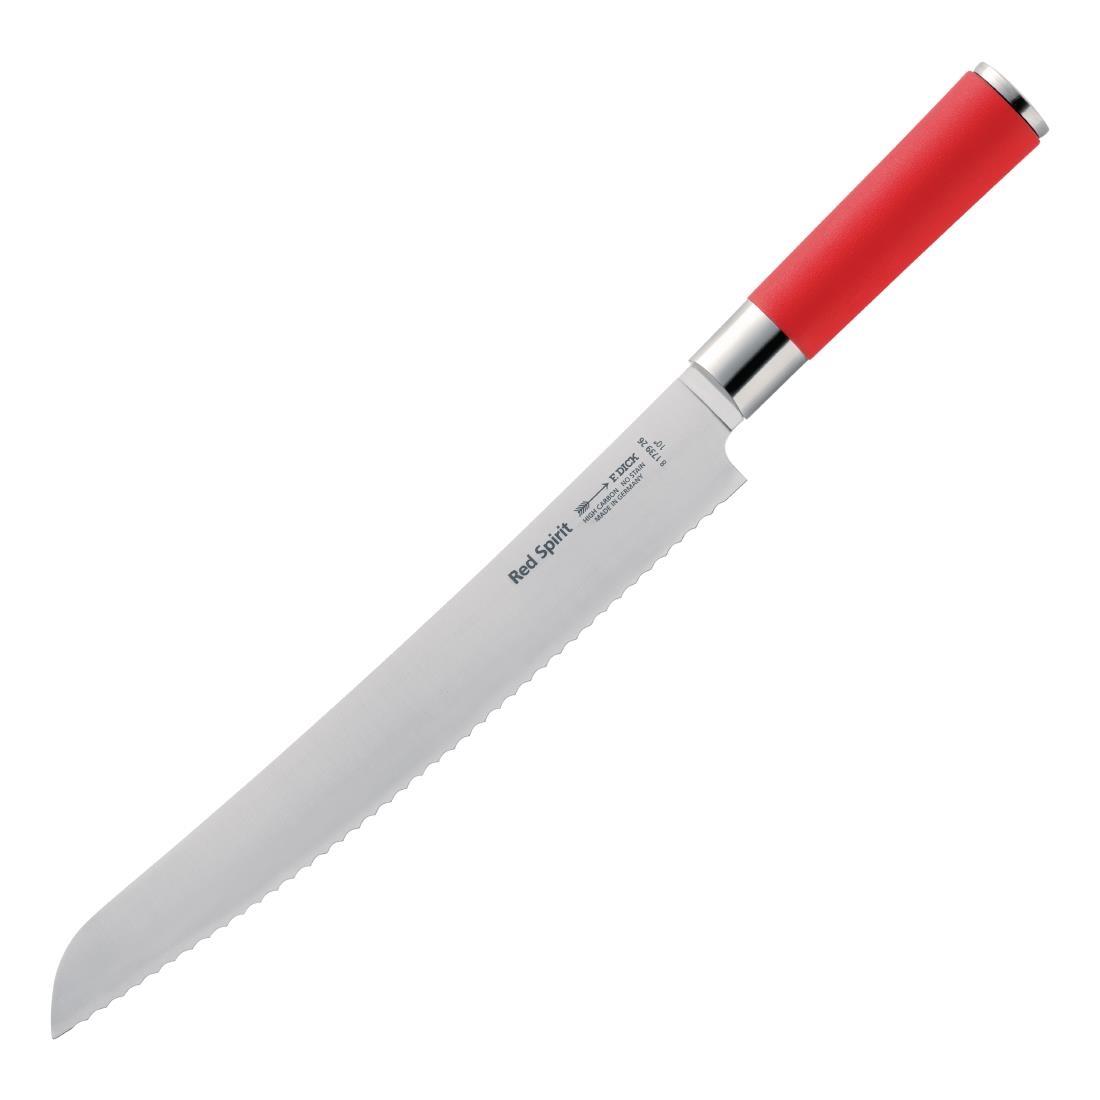 Dick Red Spirit Bread Knife 26cm - GH290  - 1